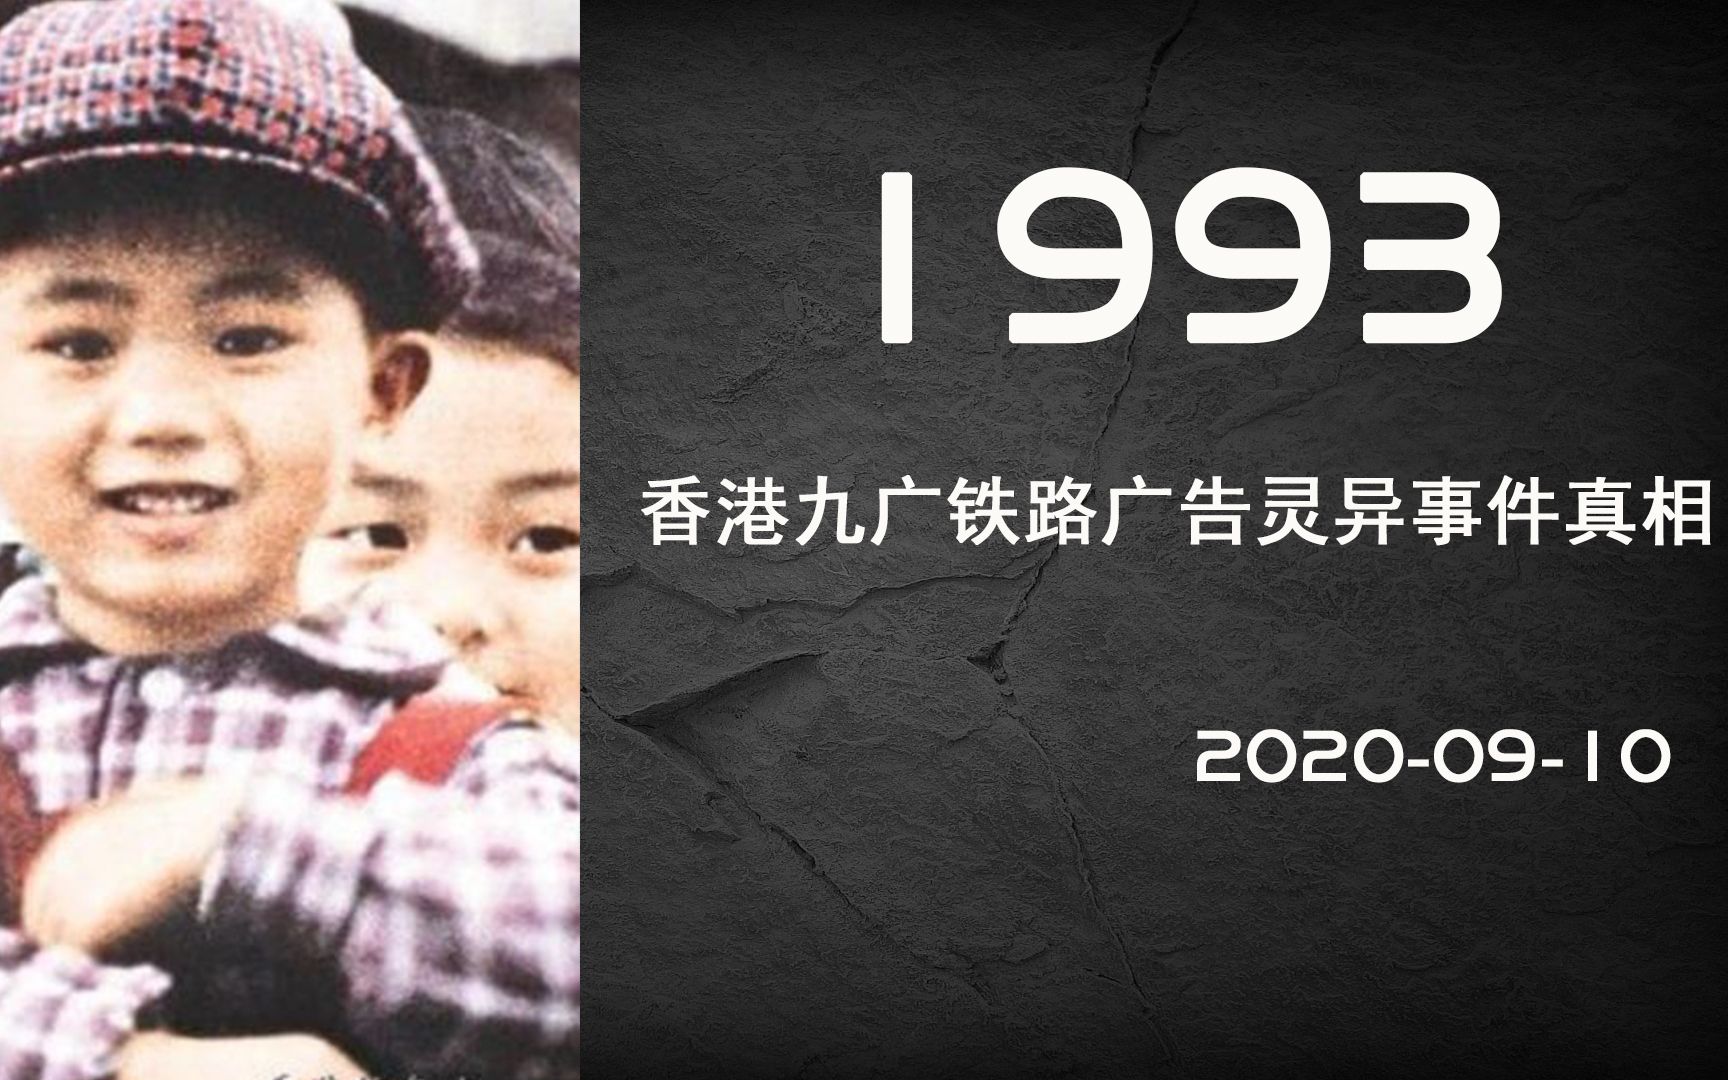 广九铁路广告 1993图片